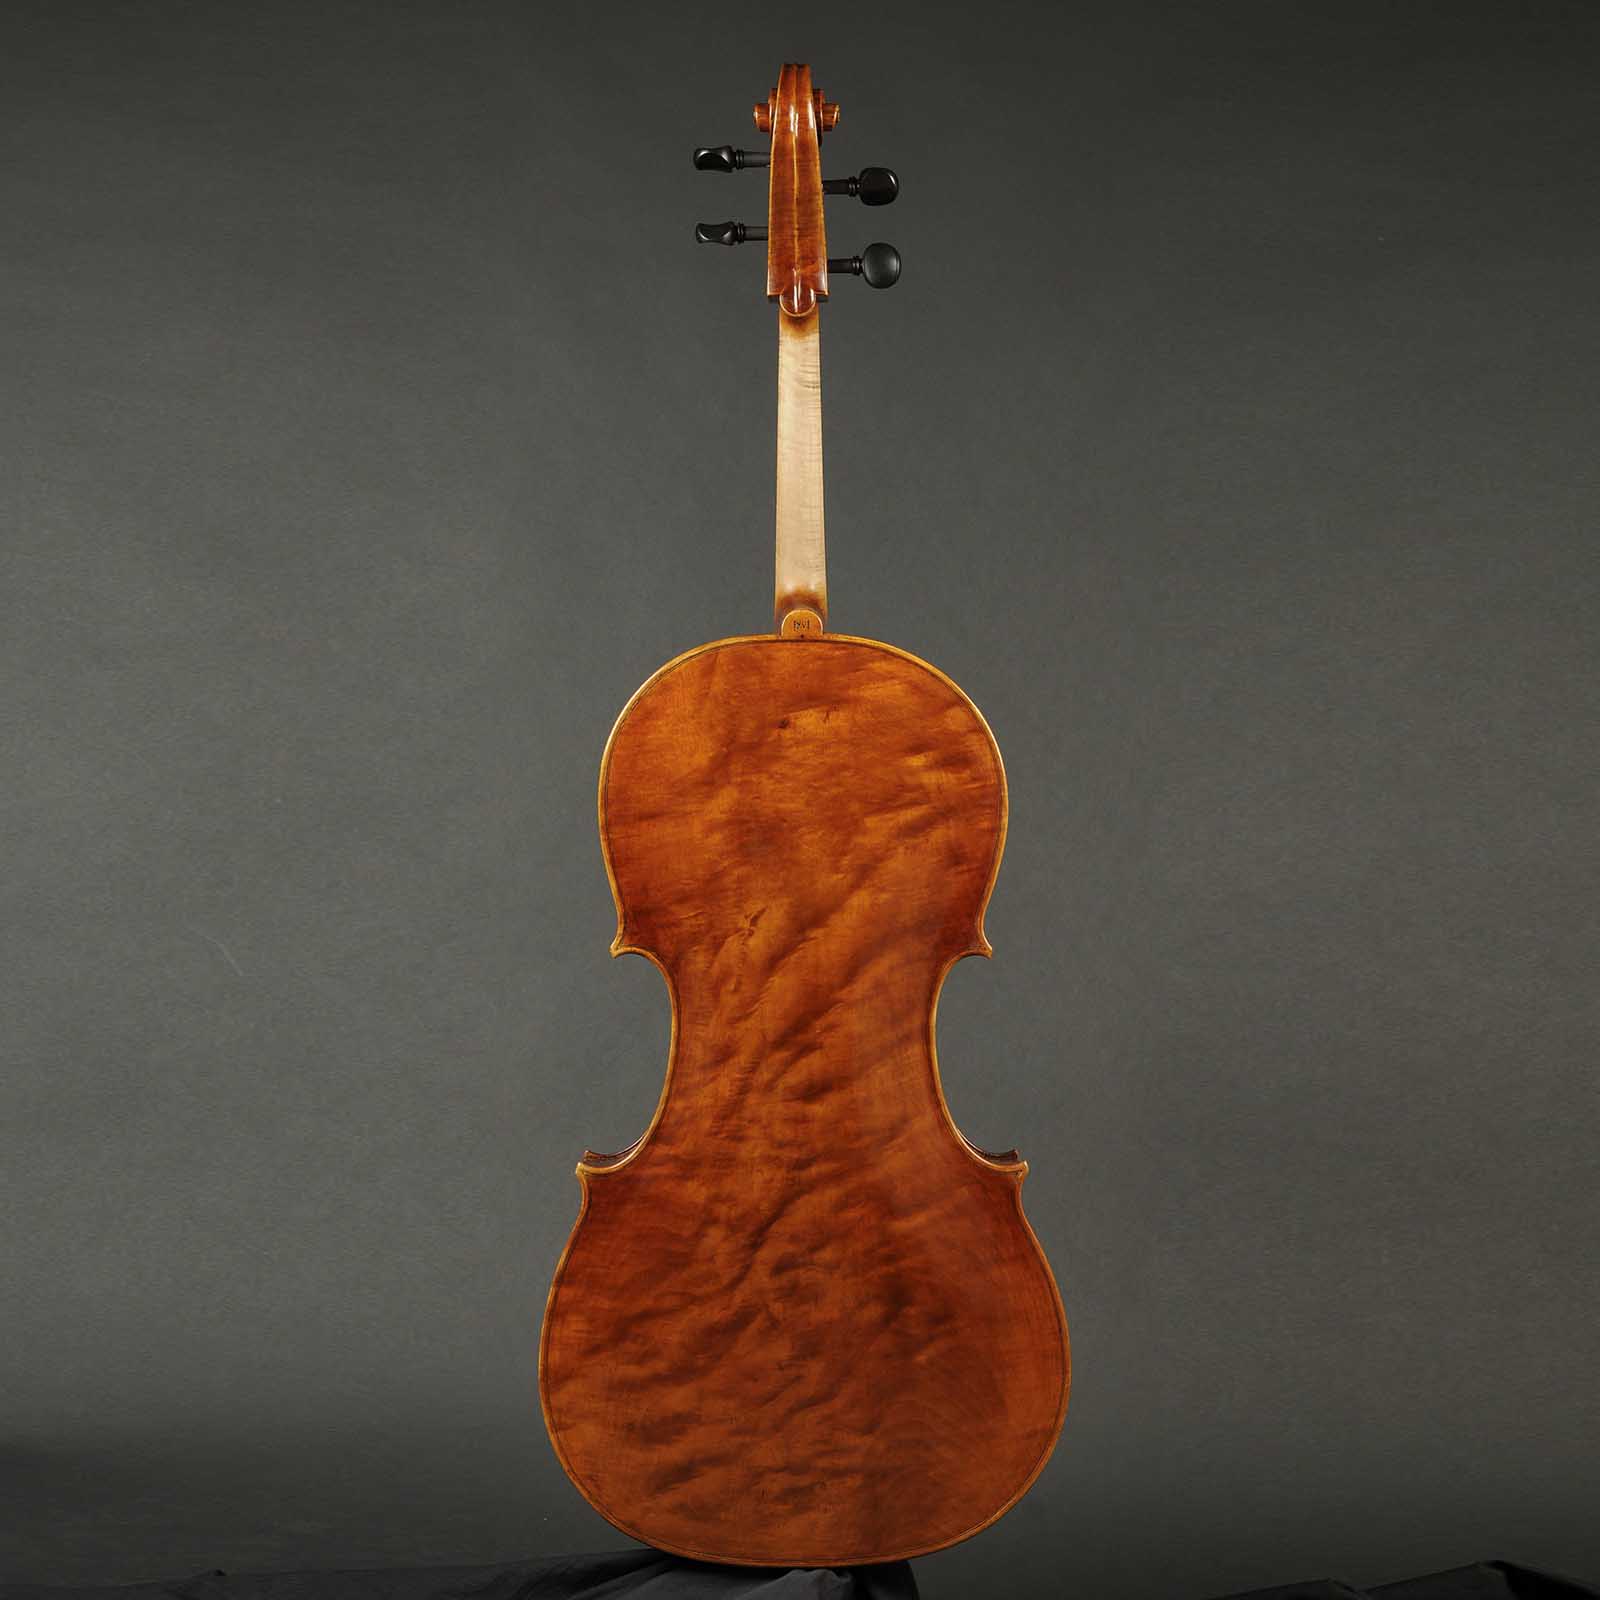 Antonio Stradivari Cremona 1730 “Feuermann“ “Fondo Unico“ - Image 2